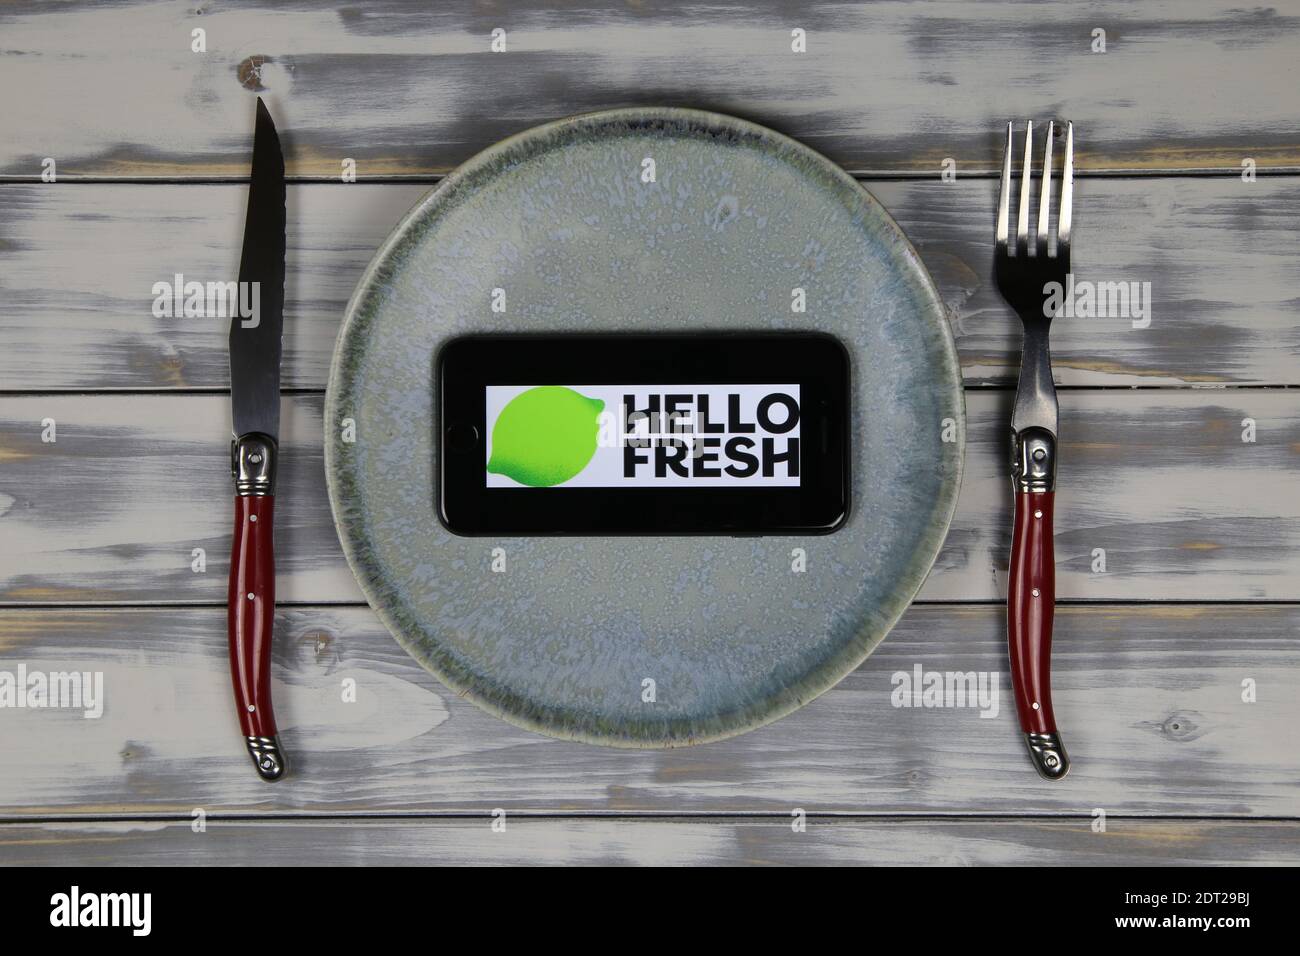 Viersen, Deutschland - 9. Mai. 2020: Nahaufnahme des Handybildschirms mit Logo-Schriftzug des Food Delivery Service hellofresh auf Holztisch mit Schale und Cu Stockfoto